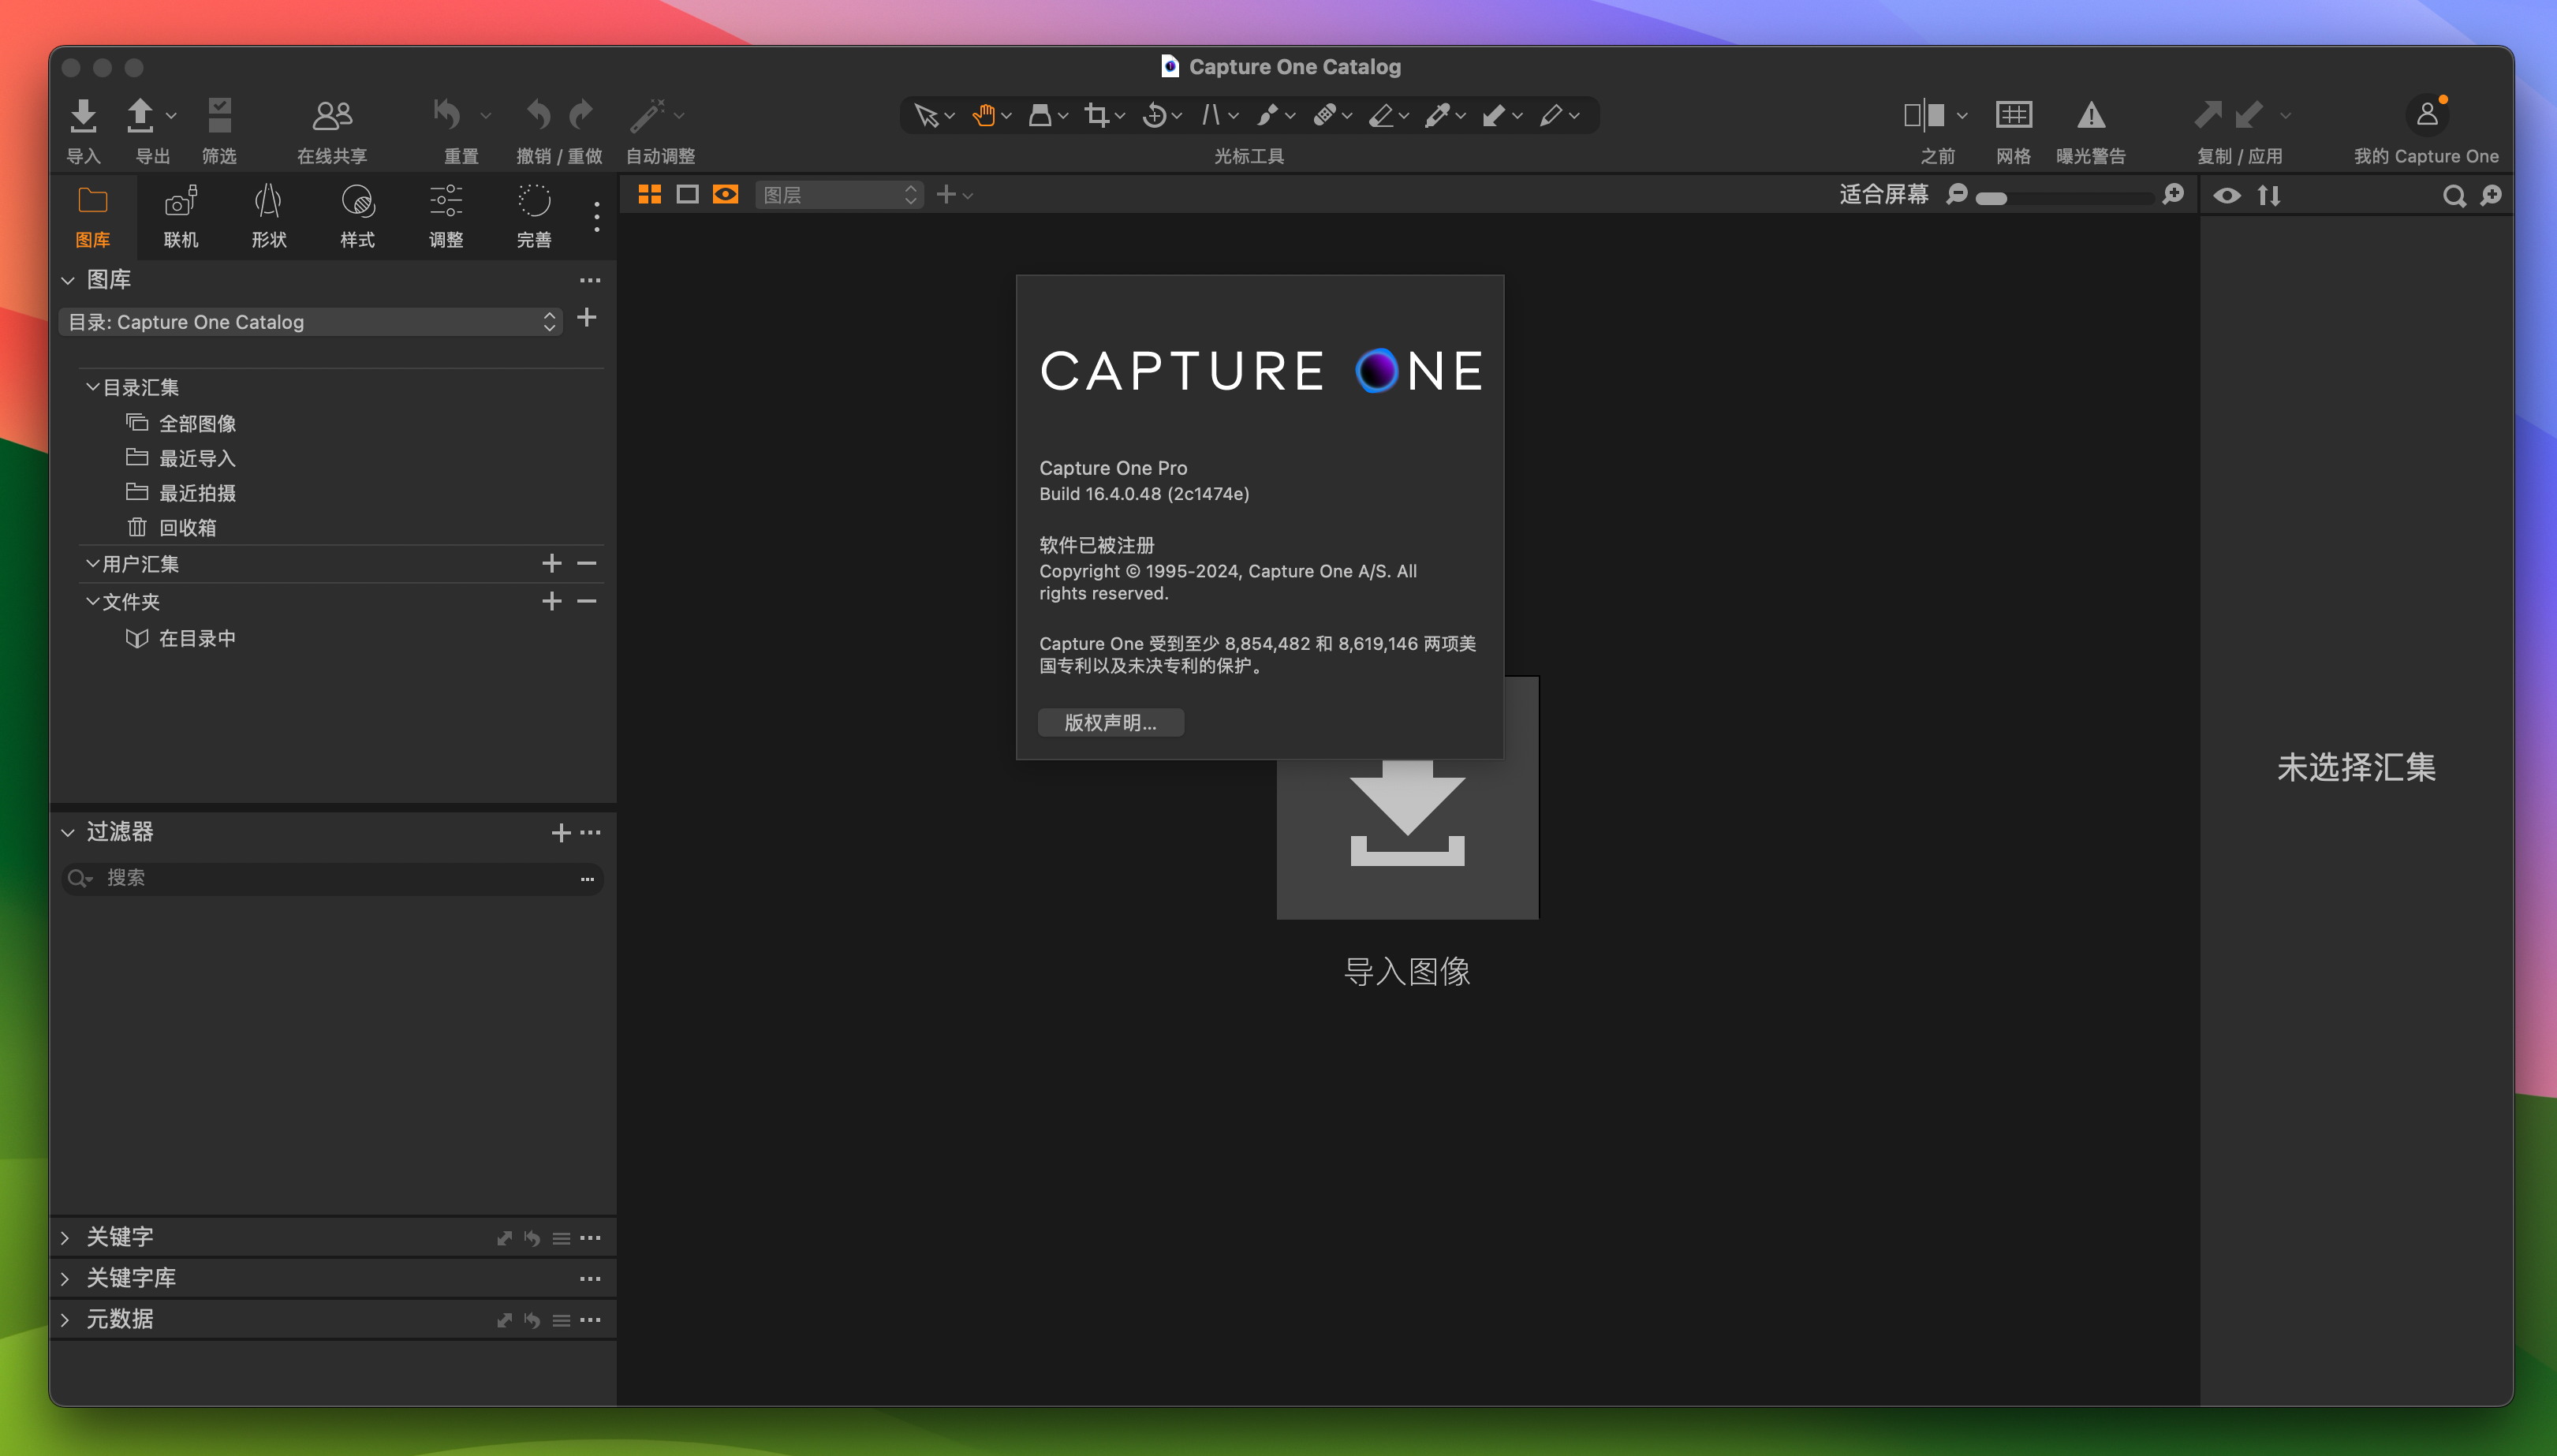 Capture One 23 Pro for Mac v16.4.0.48 RAW转换和图像编辑工具 免激活下载-1